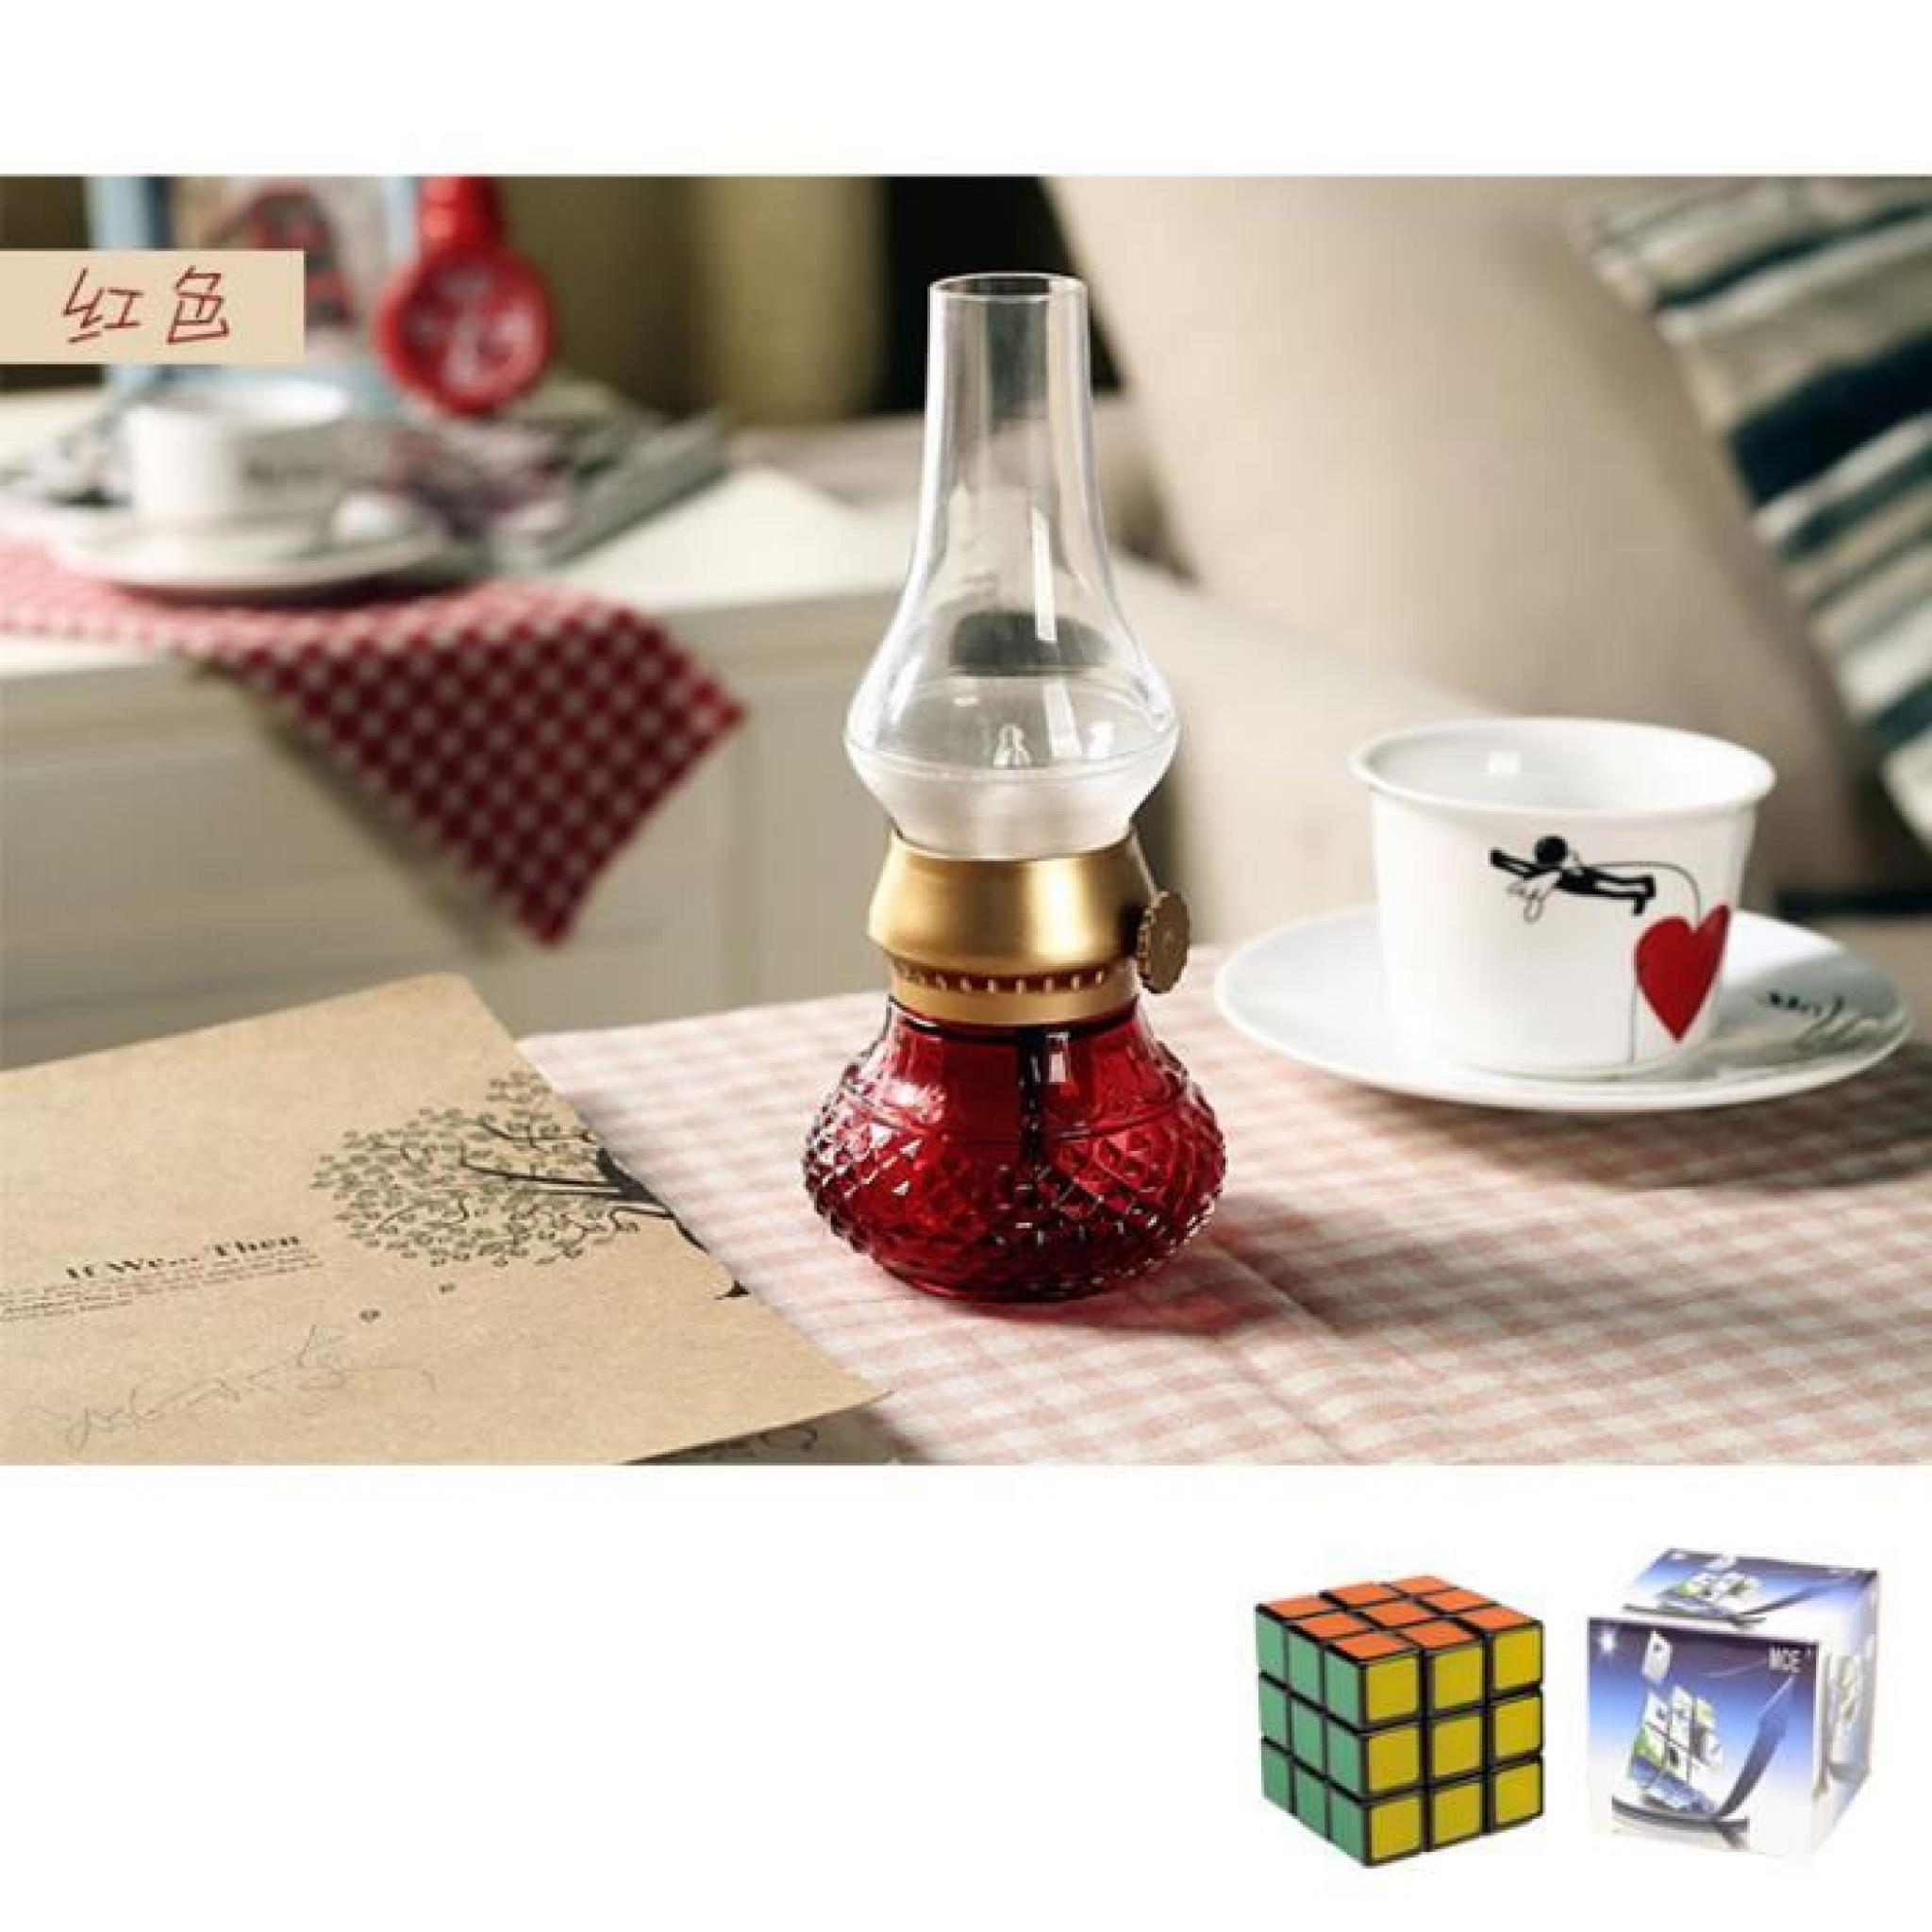 MCE Rétro lampe de chevet Creative Lampe LED USB rechargeable décoratif +un Rubik's cube gratuit